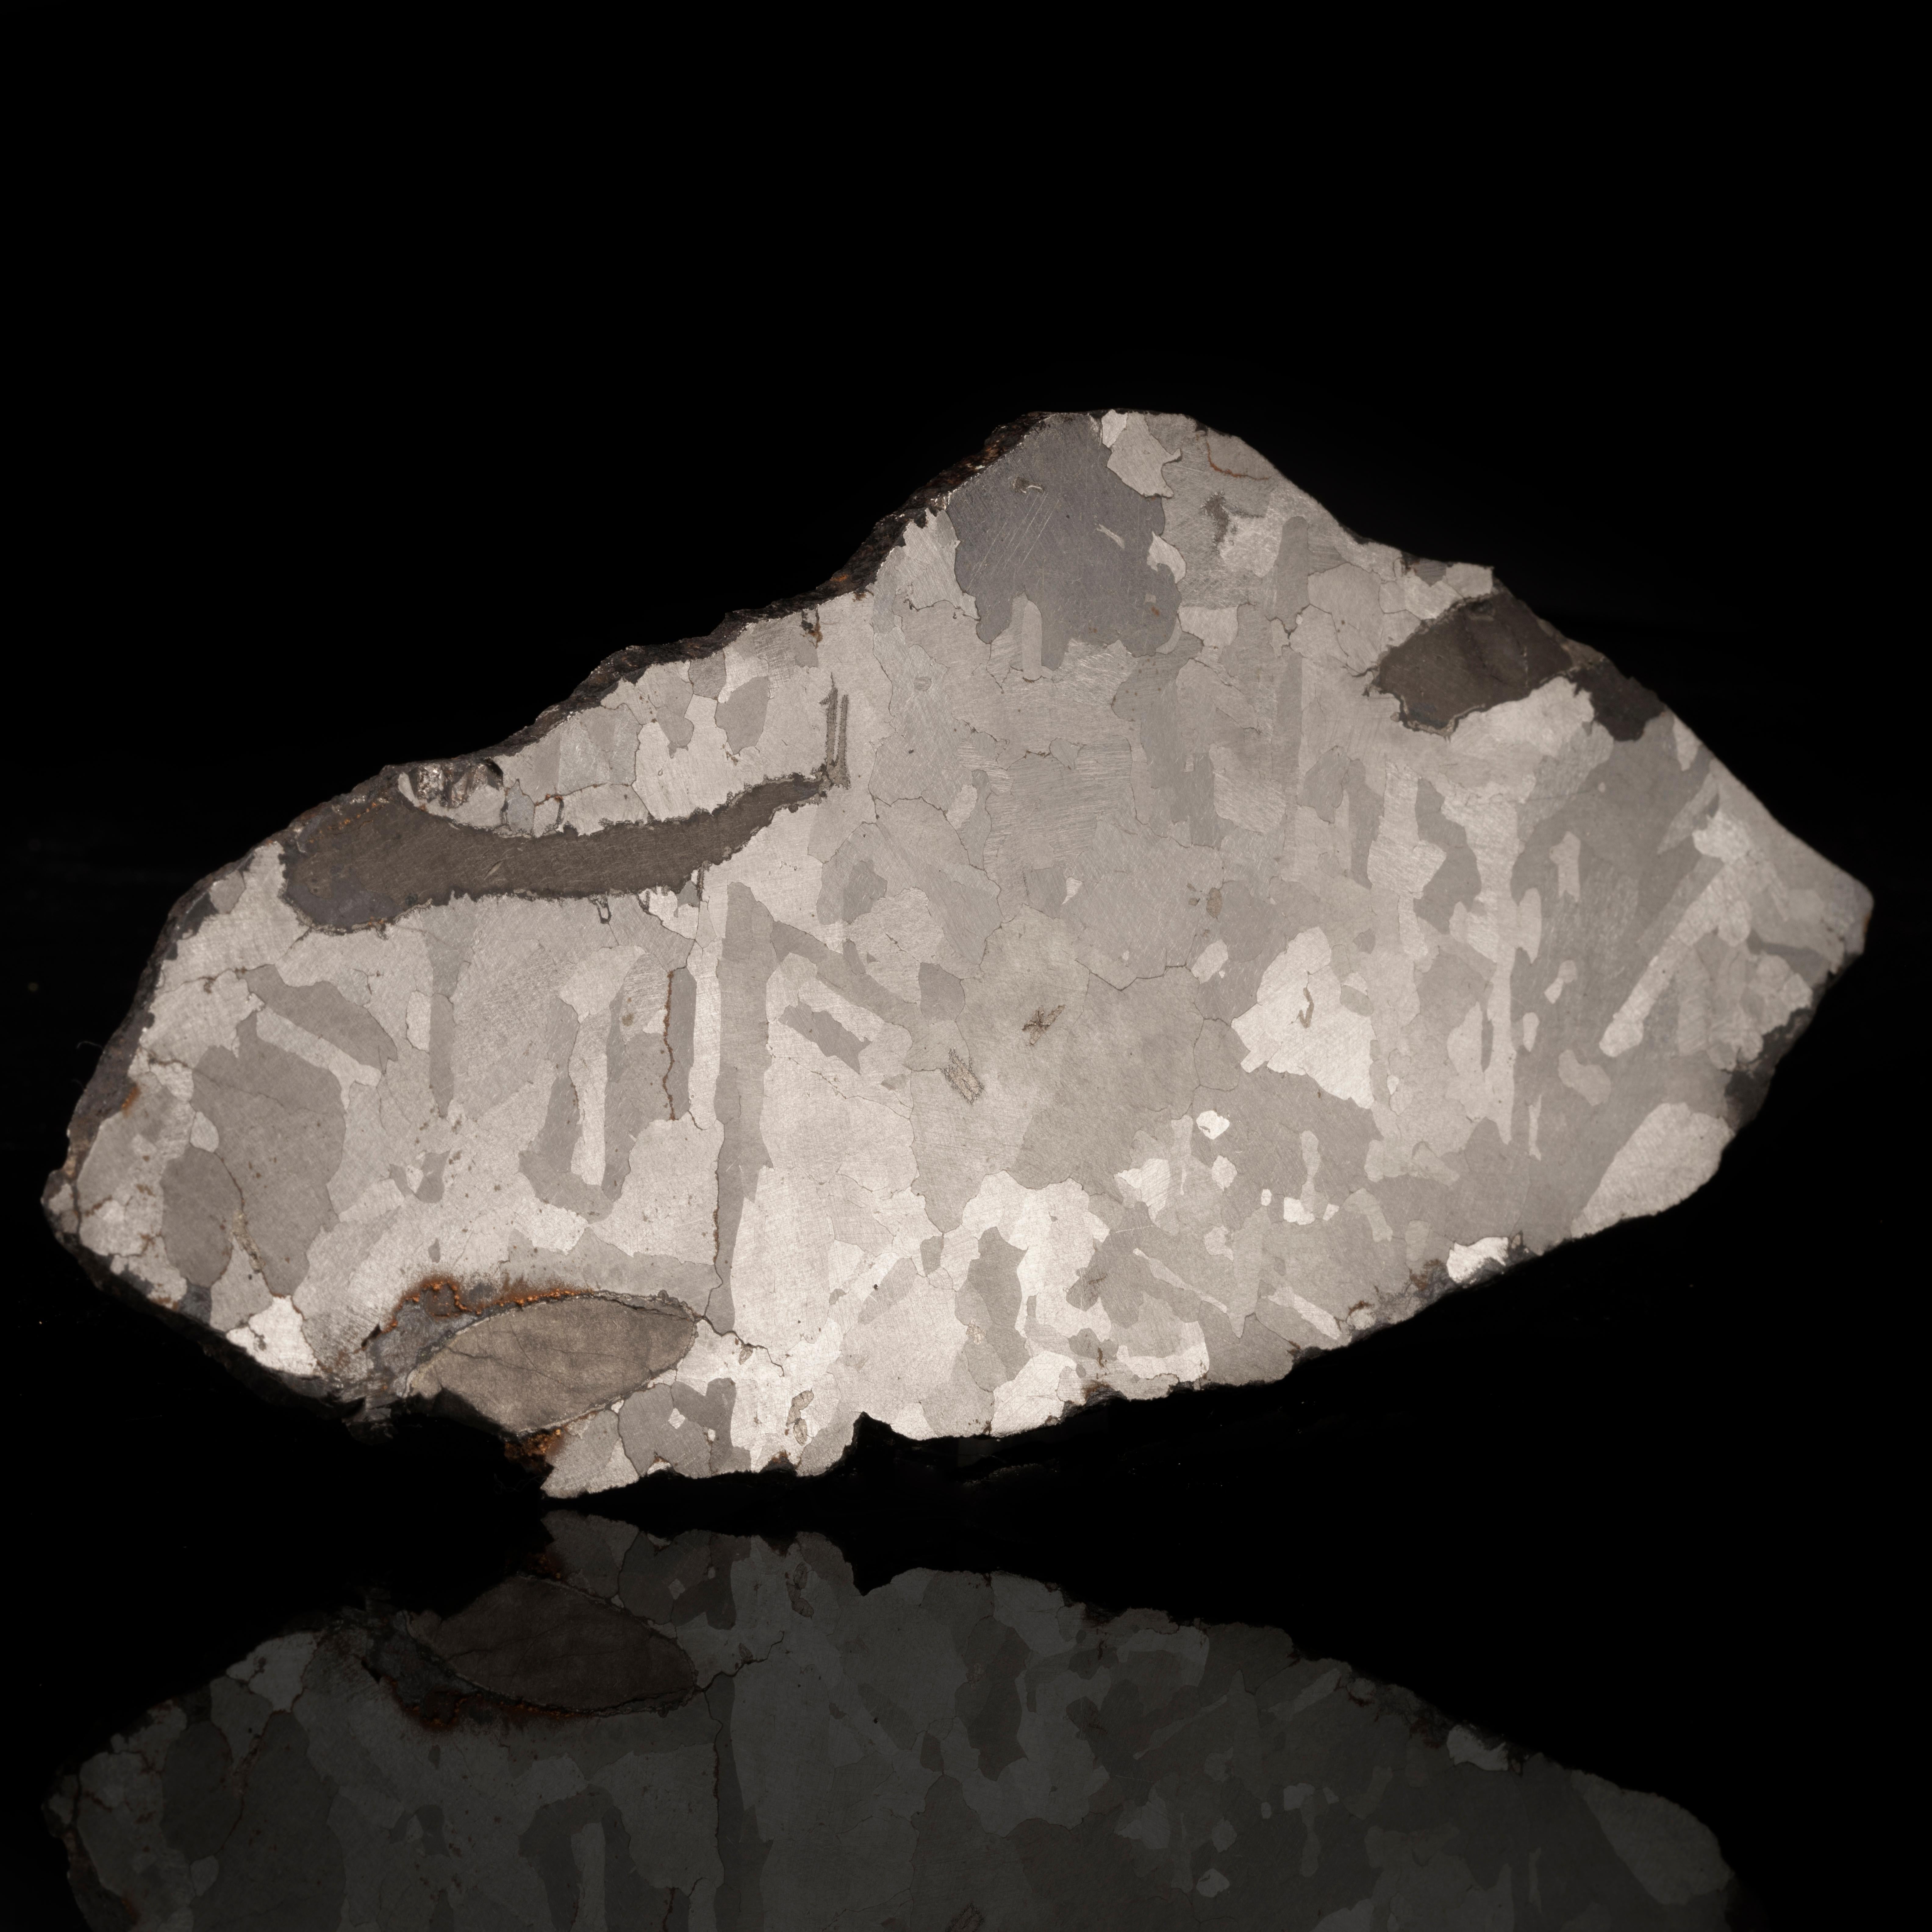 Cette lourde tranche de météorite de fer de Soledade, vieille d'environ 4,5 milliards d'années, présente une gravure en nickel ferreux unique et proéminente. Cette octaédrite a été découverte en 1986 sous la forme d'une masse de 68 kg chauffée au